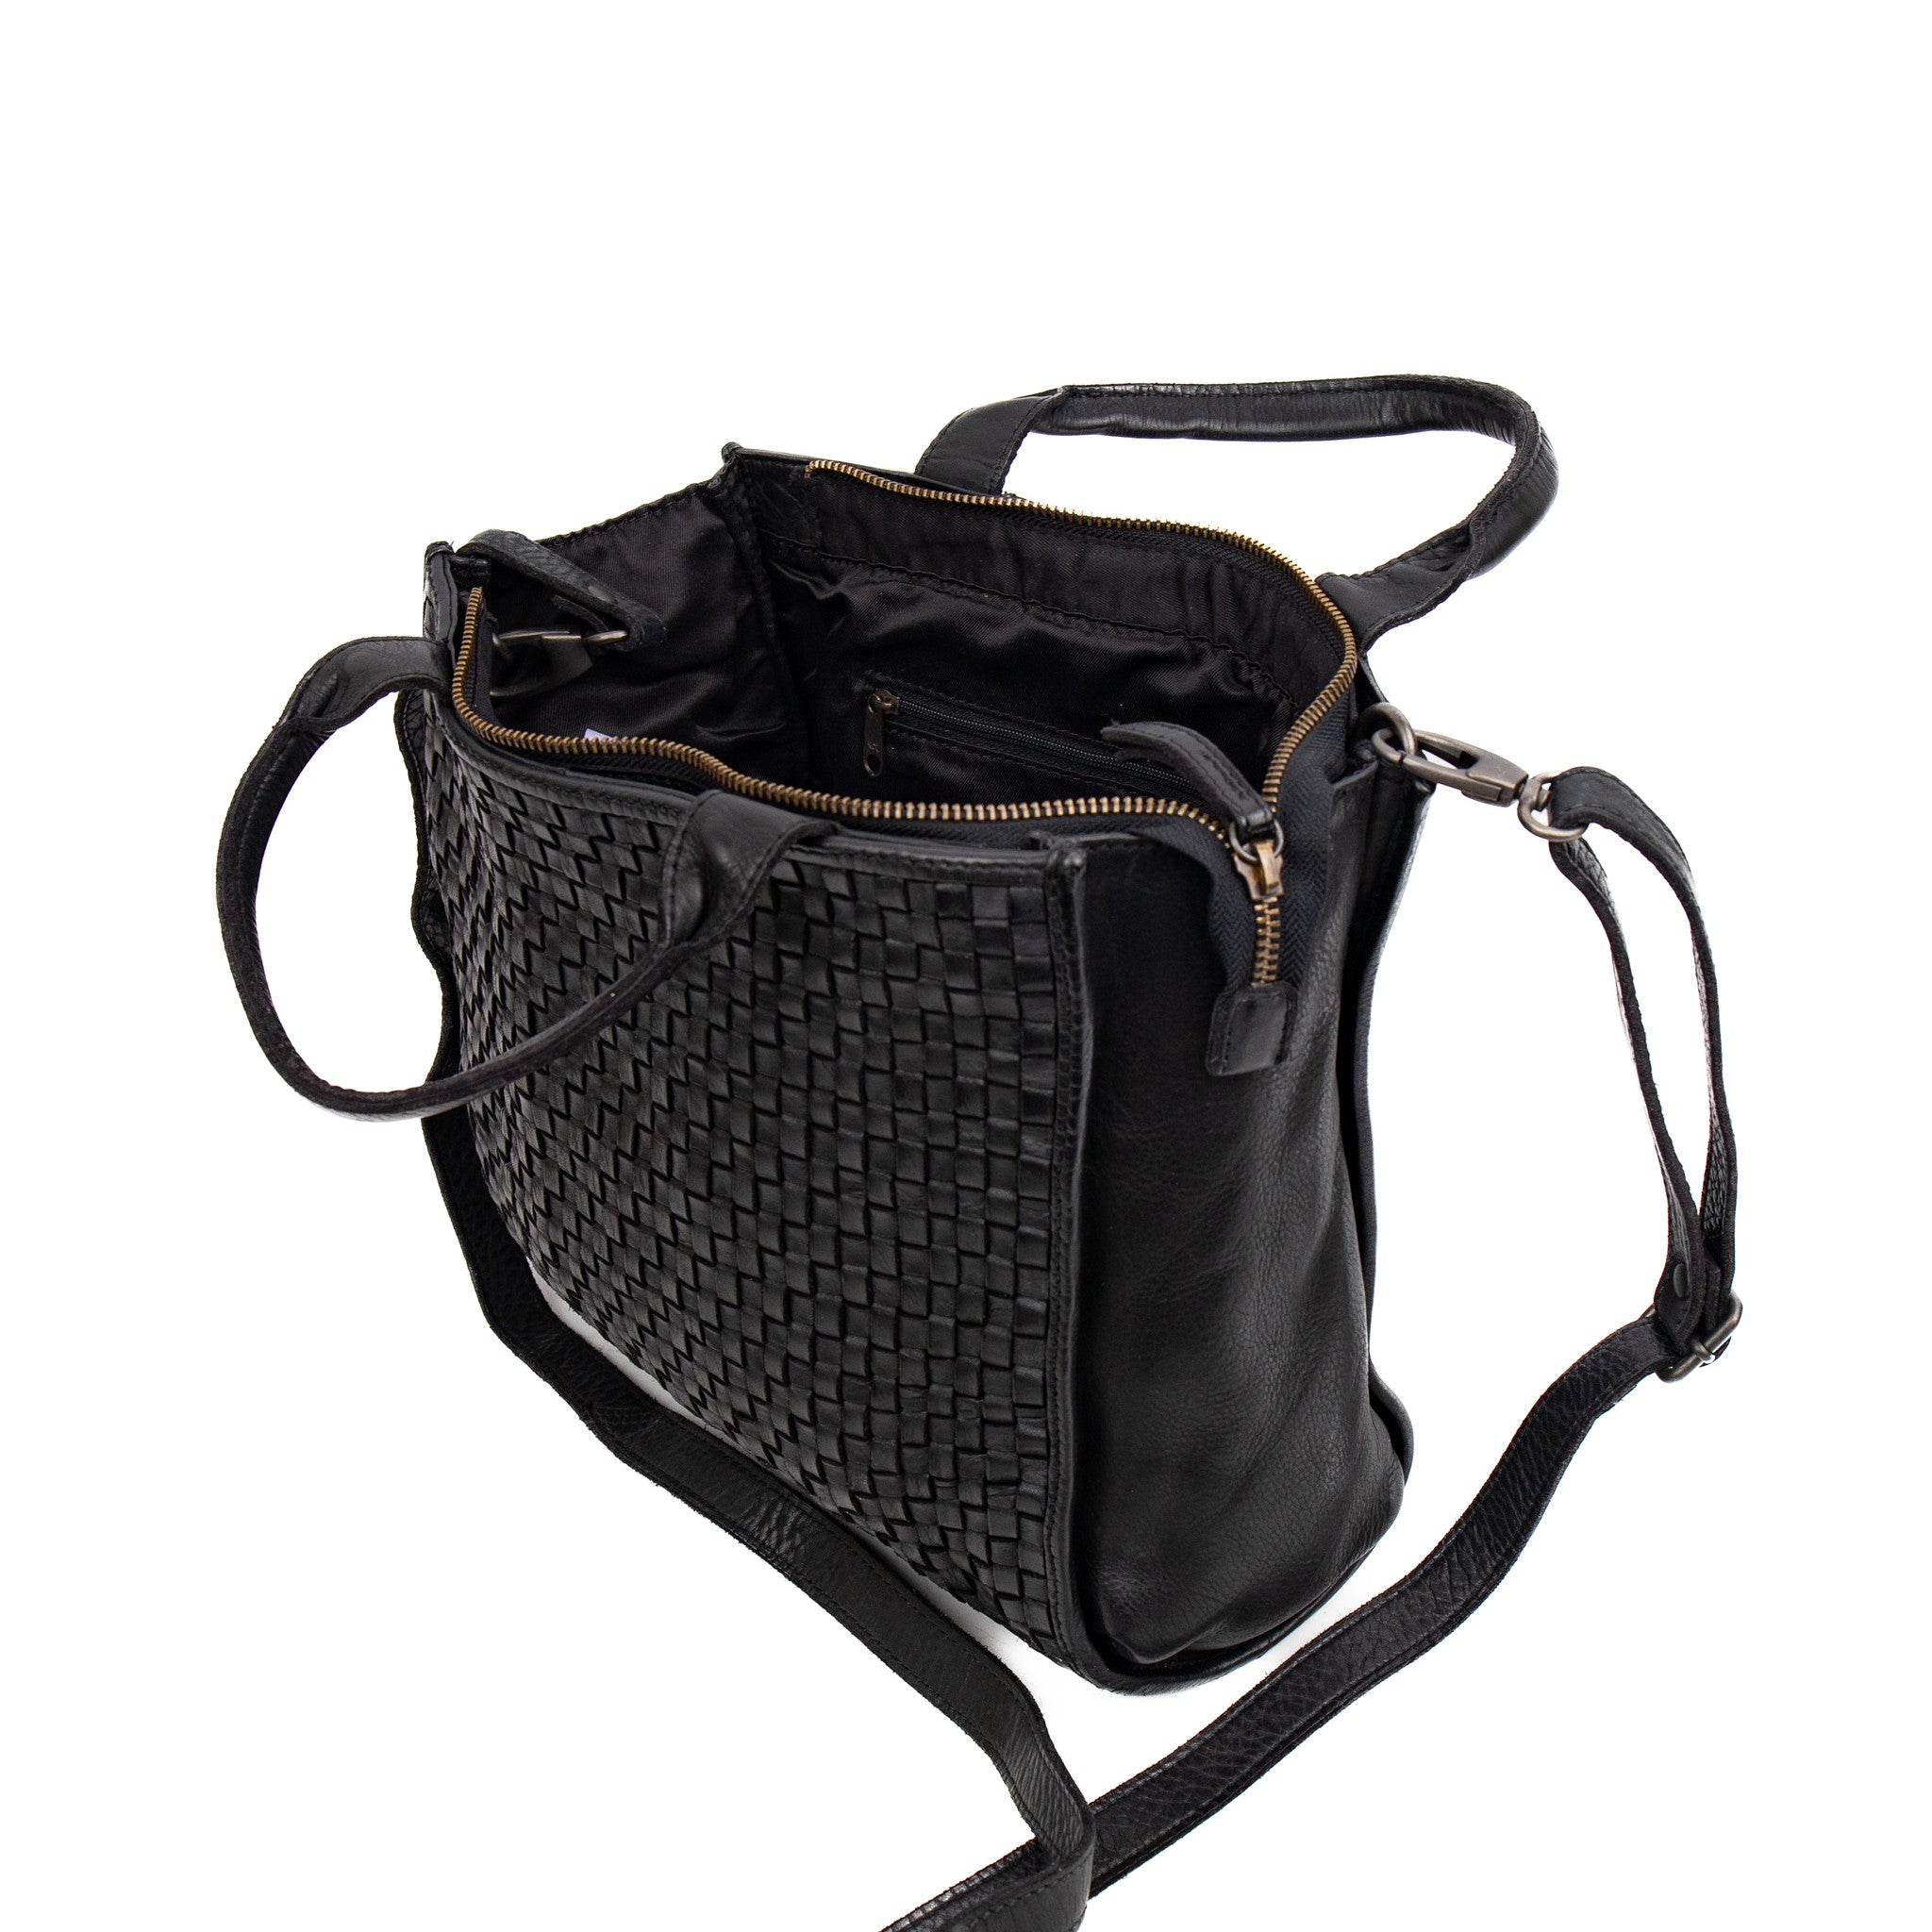 Hand/shoulder bag 'Zaza' black - CL 43372